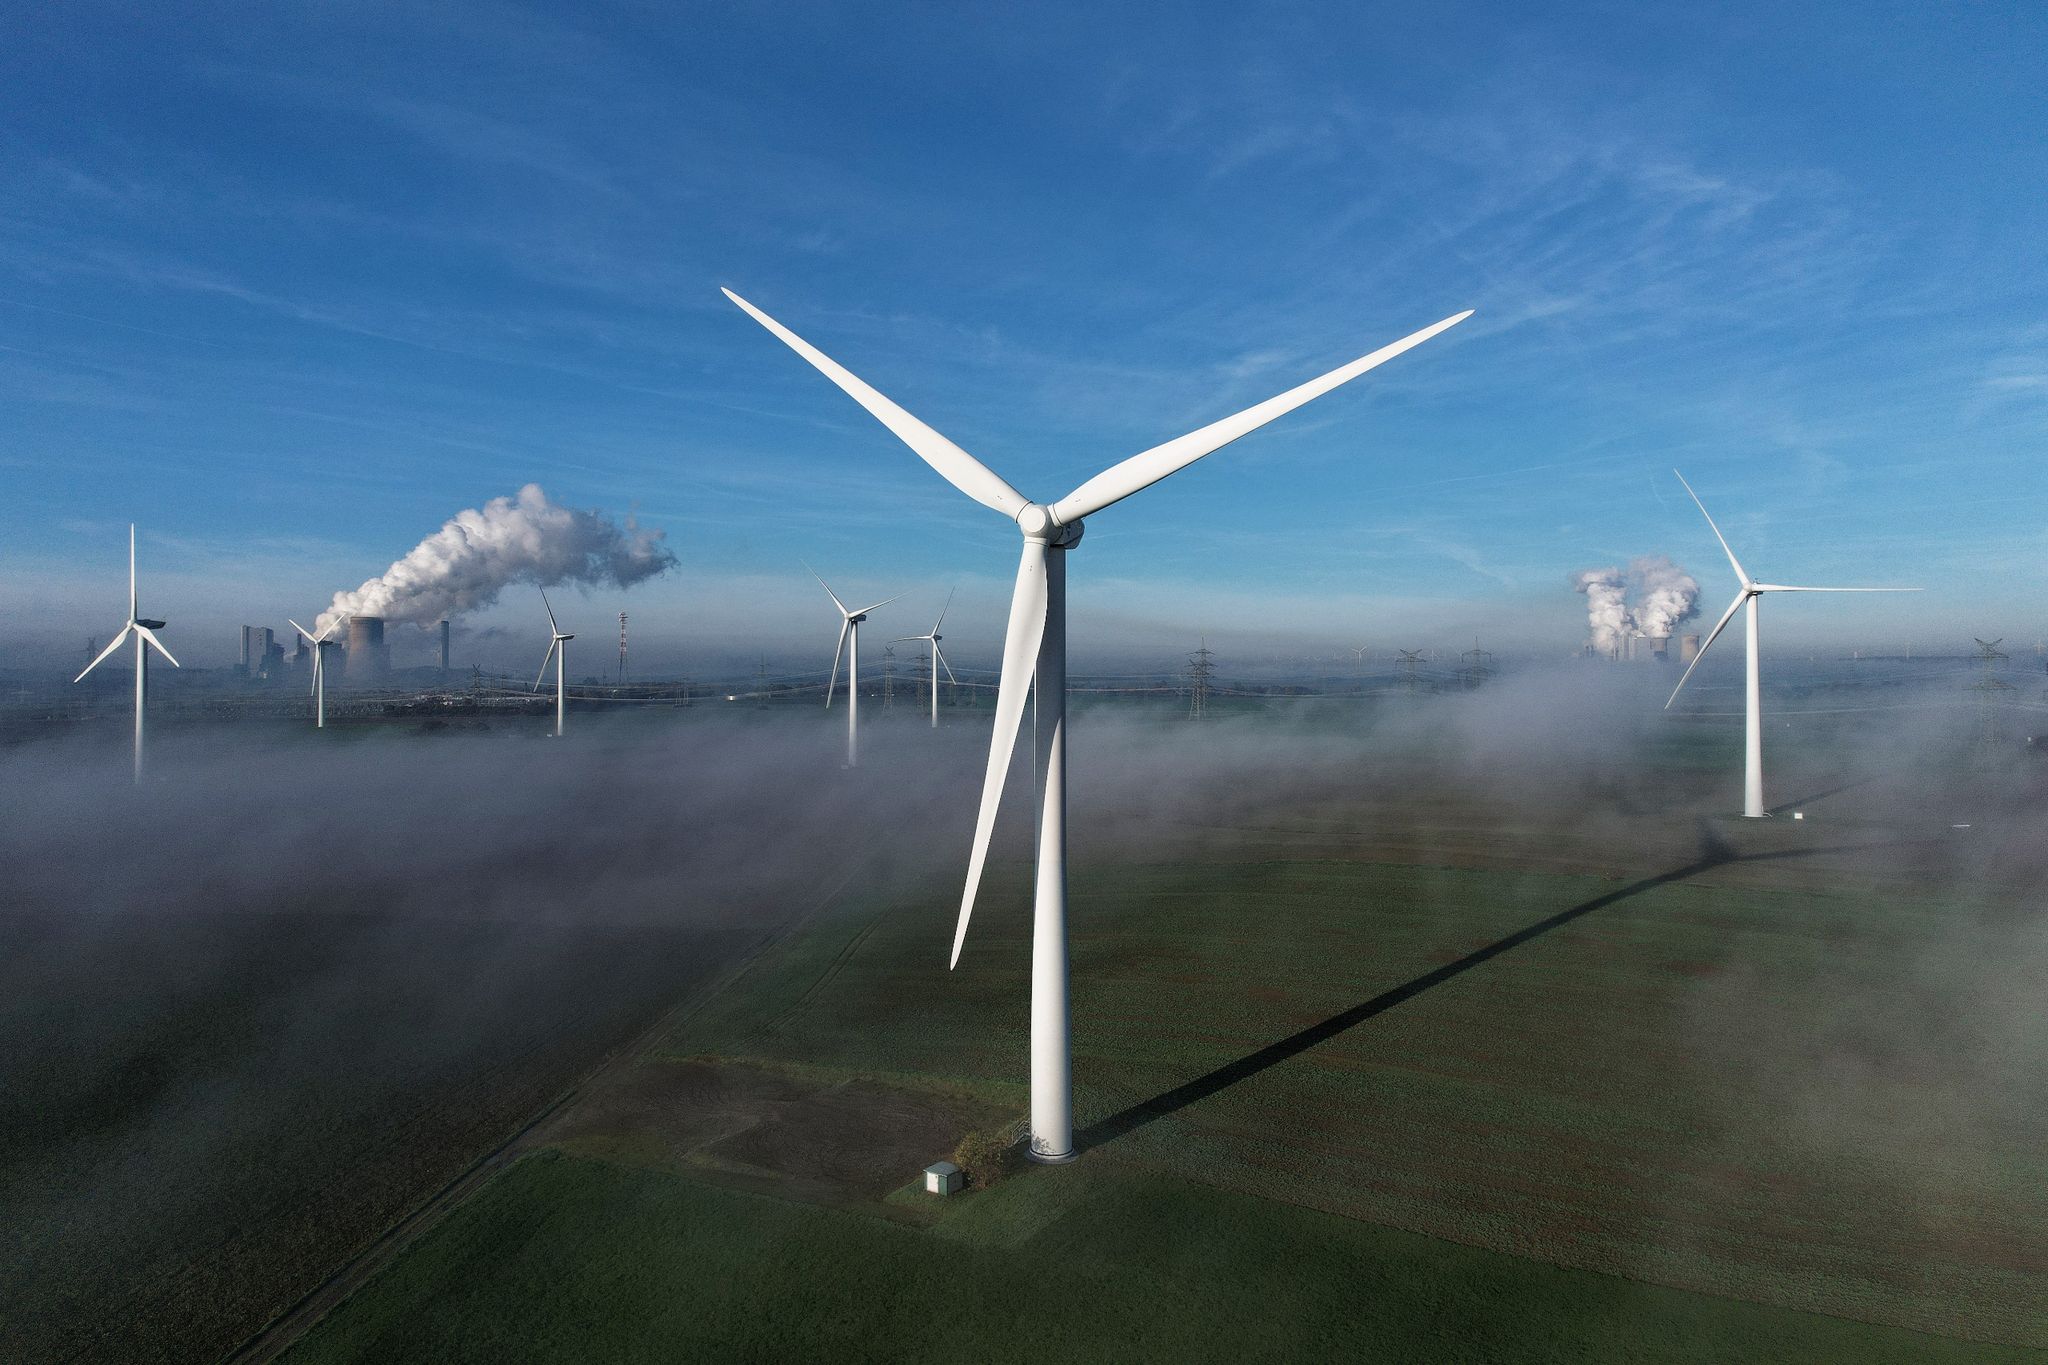 Erneuerbare Energien wie die Windkraft sollen schneller ausgebaut werden, fordert das Umweltbundesamt.